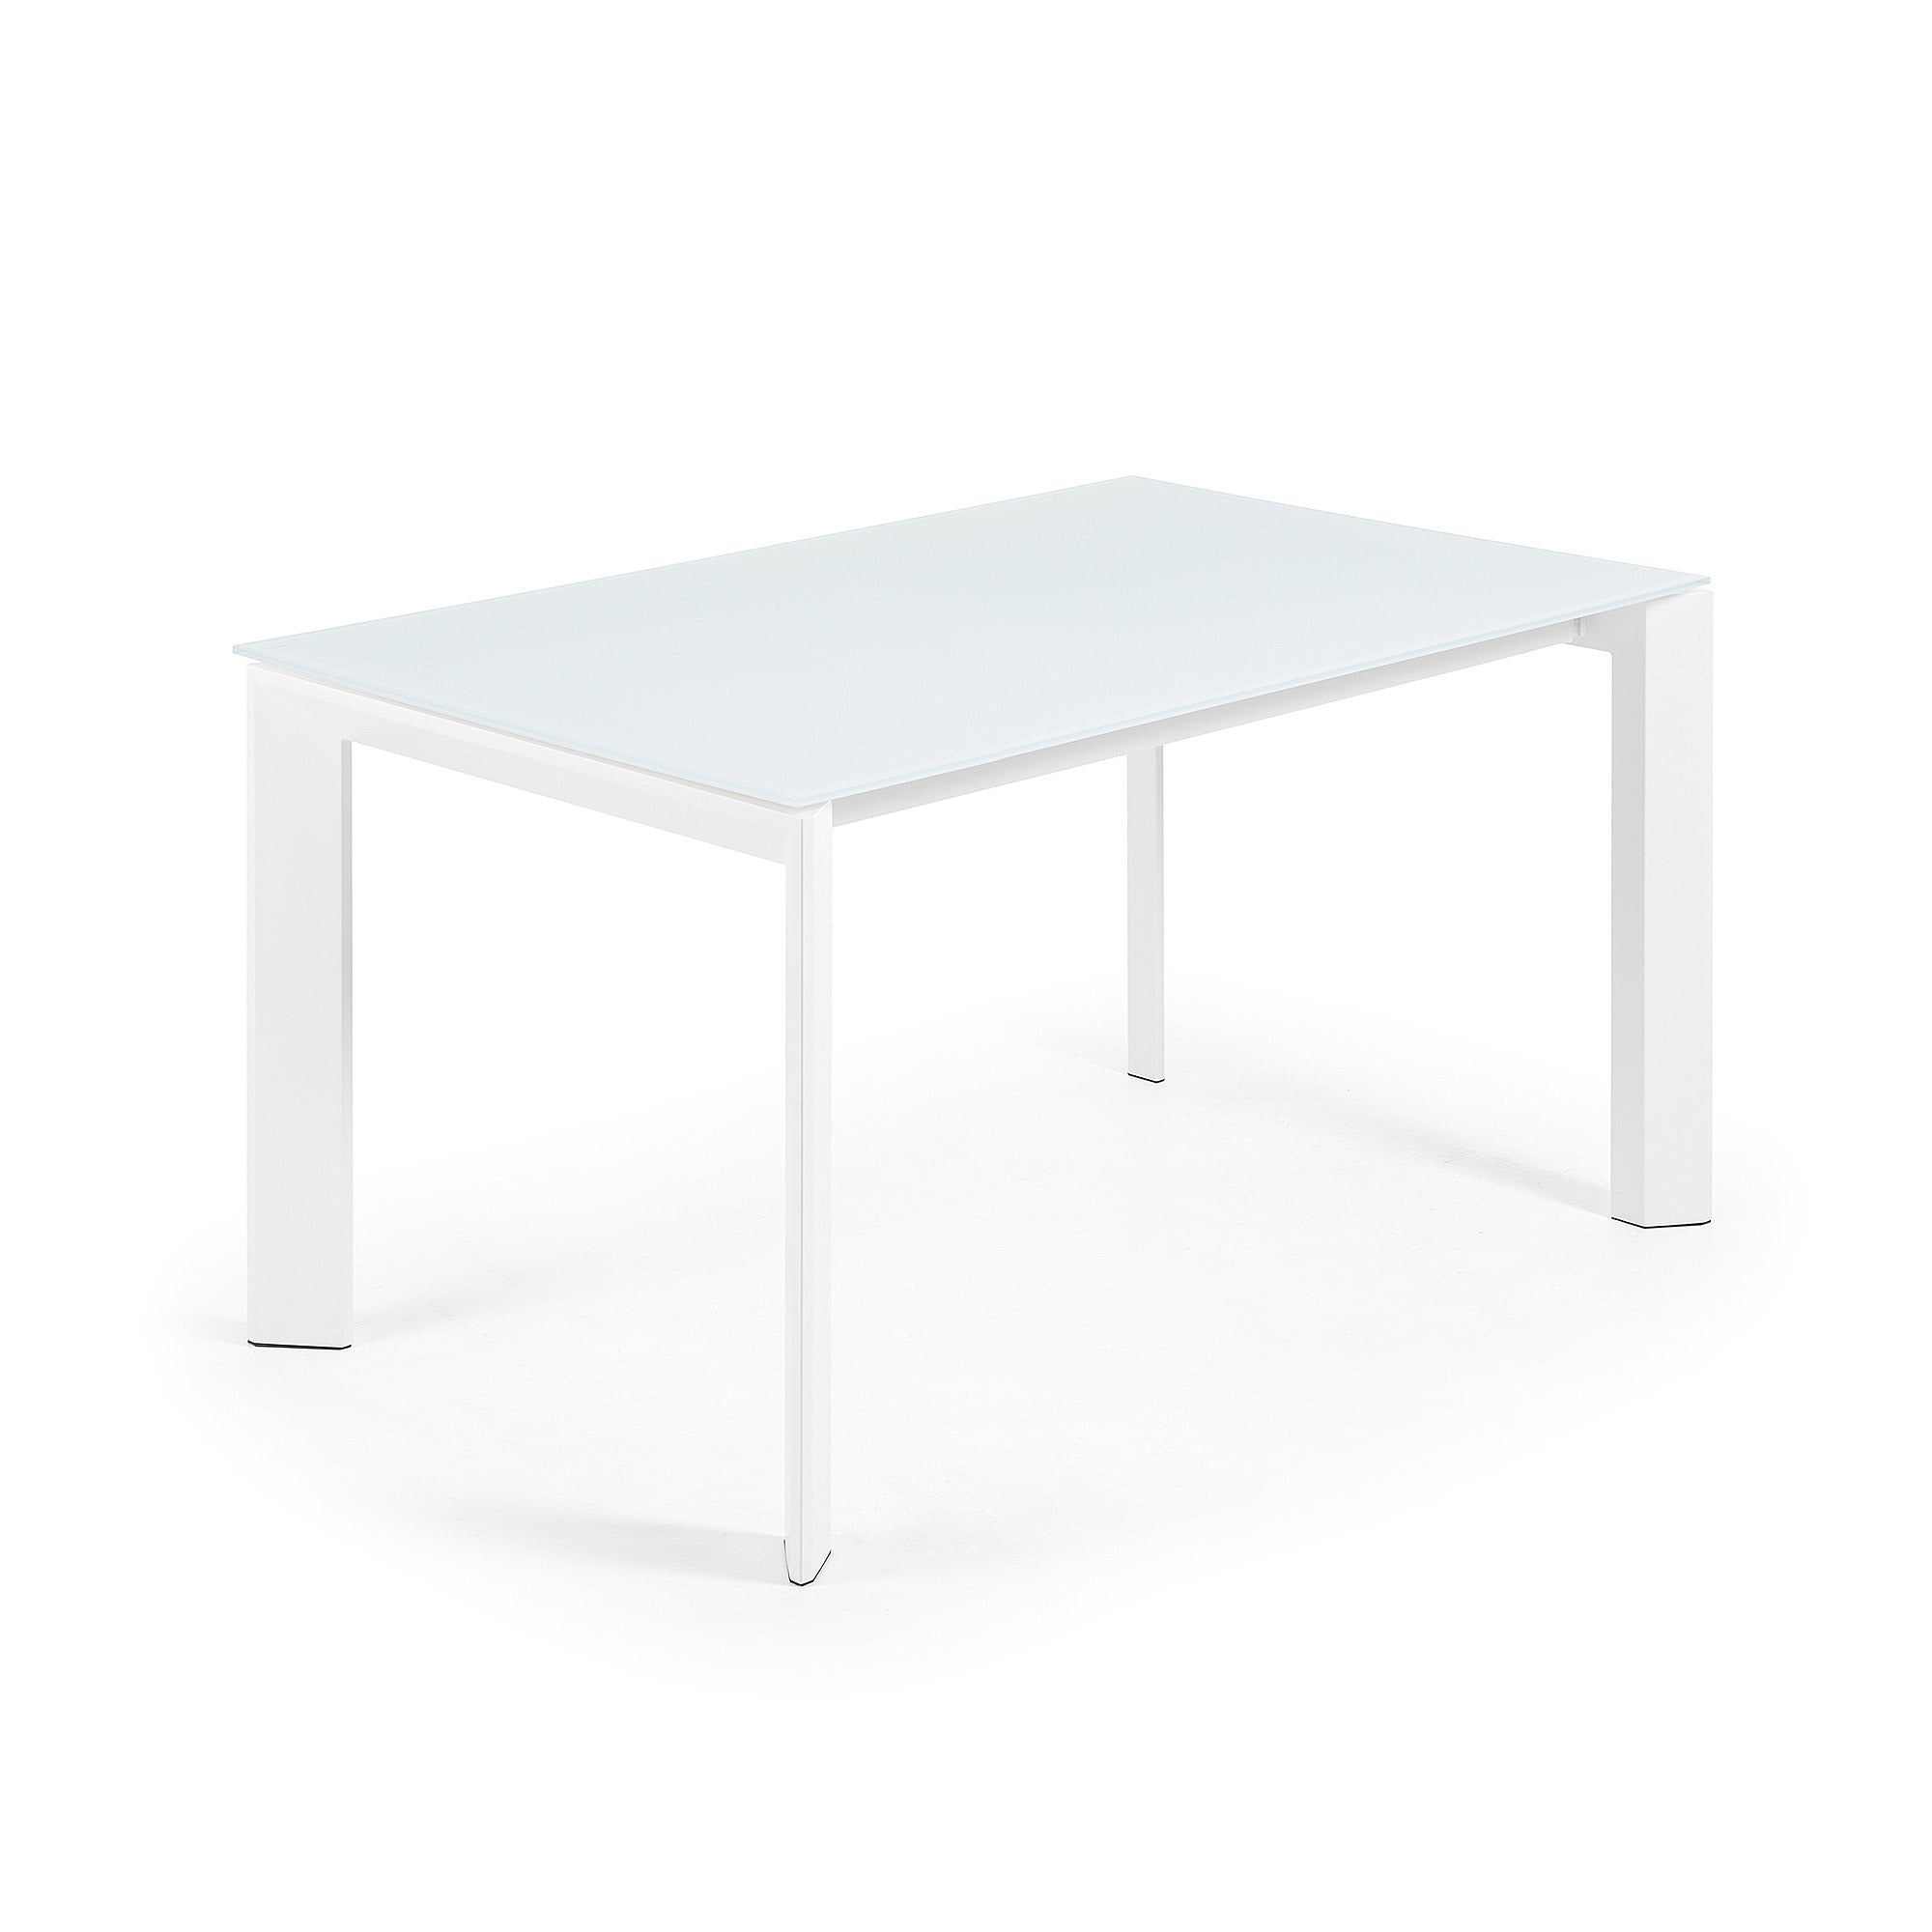 Axis fehér üvegből készült kihúzható asztal fehér acél lábakkal 140 (200) cm